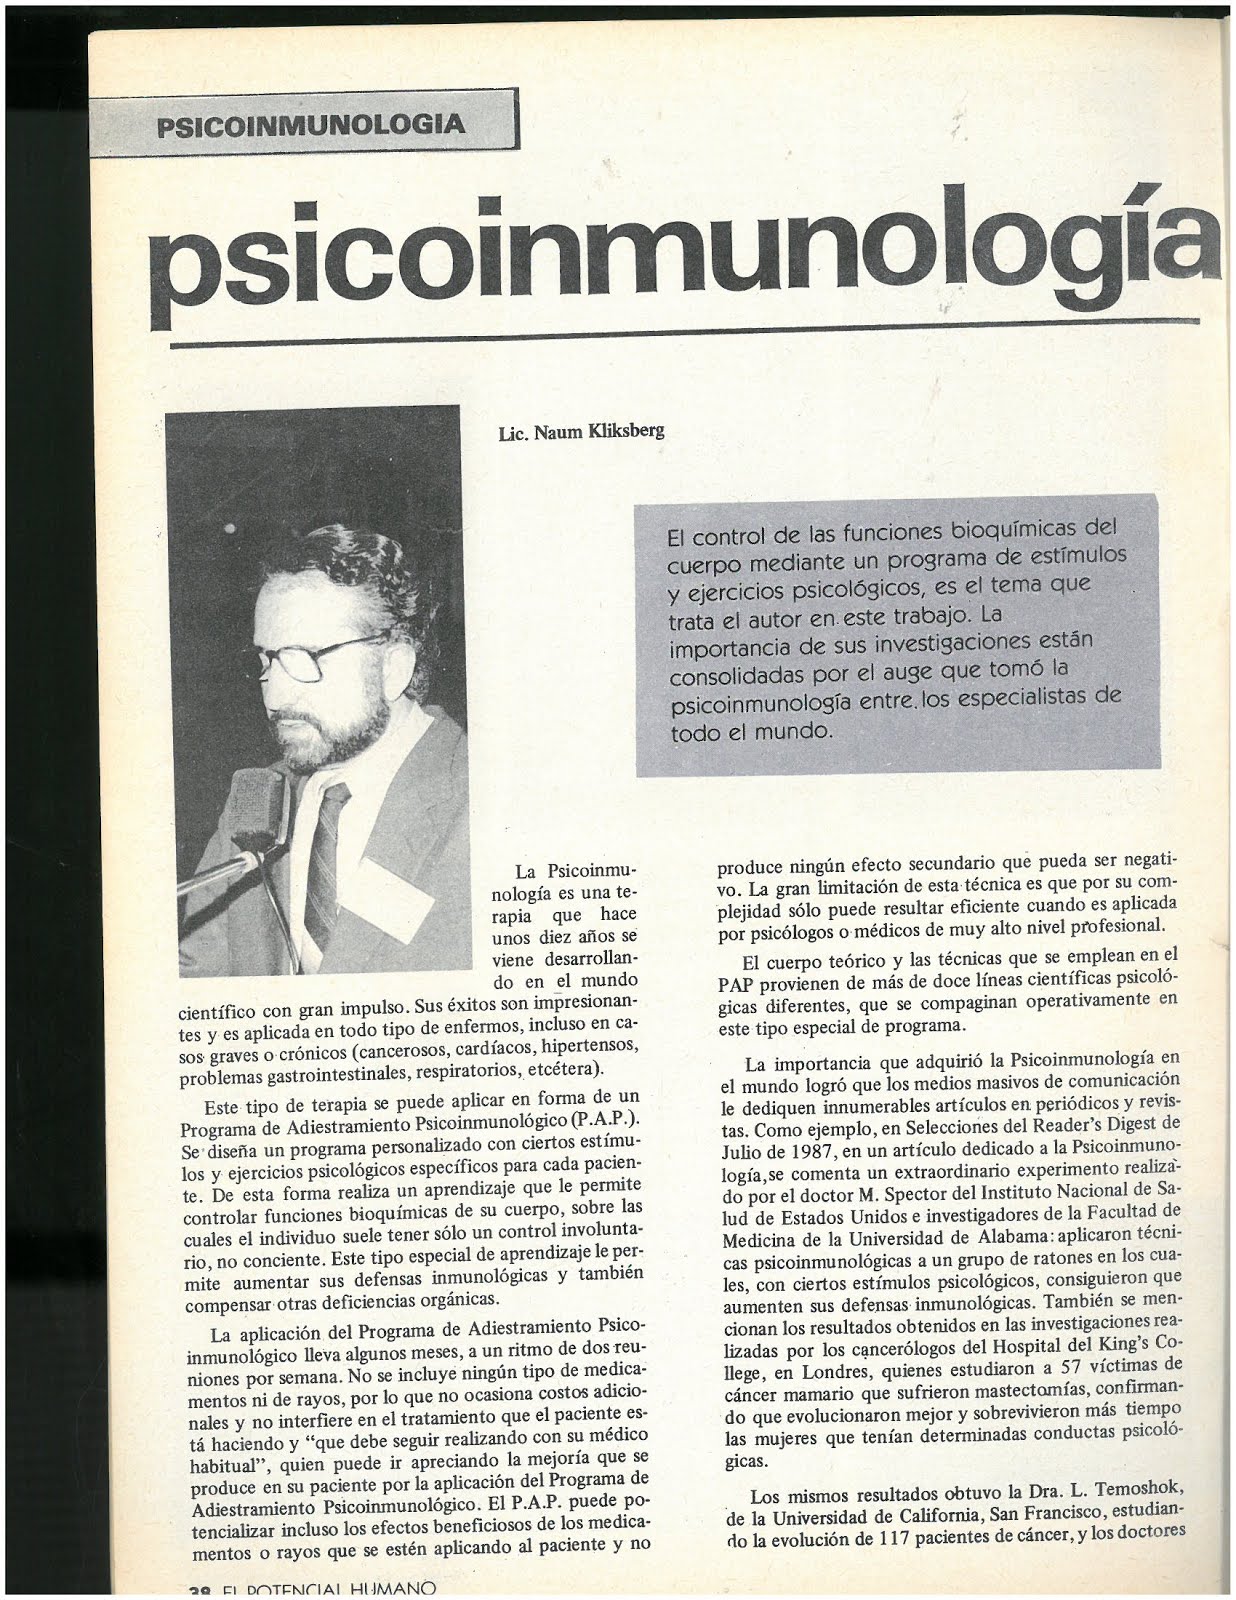 6 -Revista El potencial humano,2/1988,Argentina. ArtÍculo de Naum Kliksberg sobre Psicoinmunologia